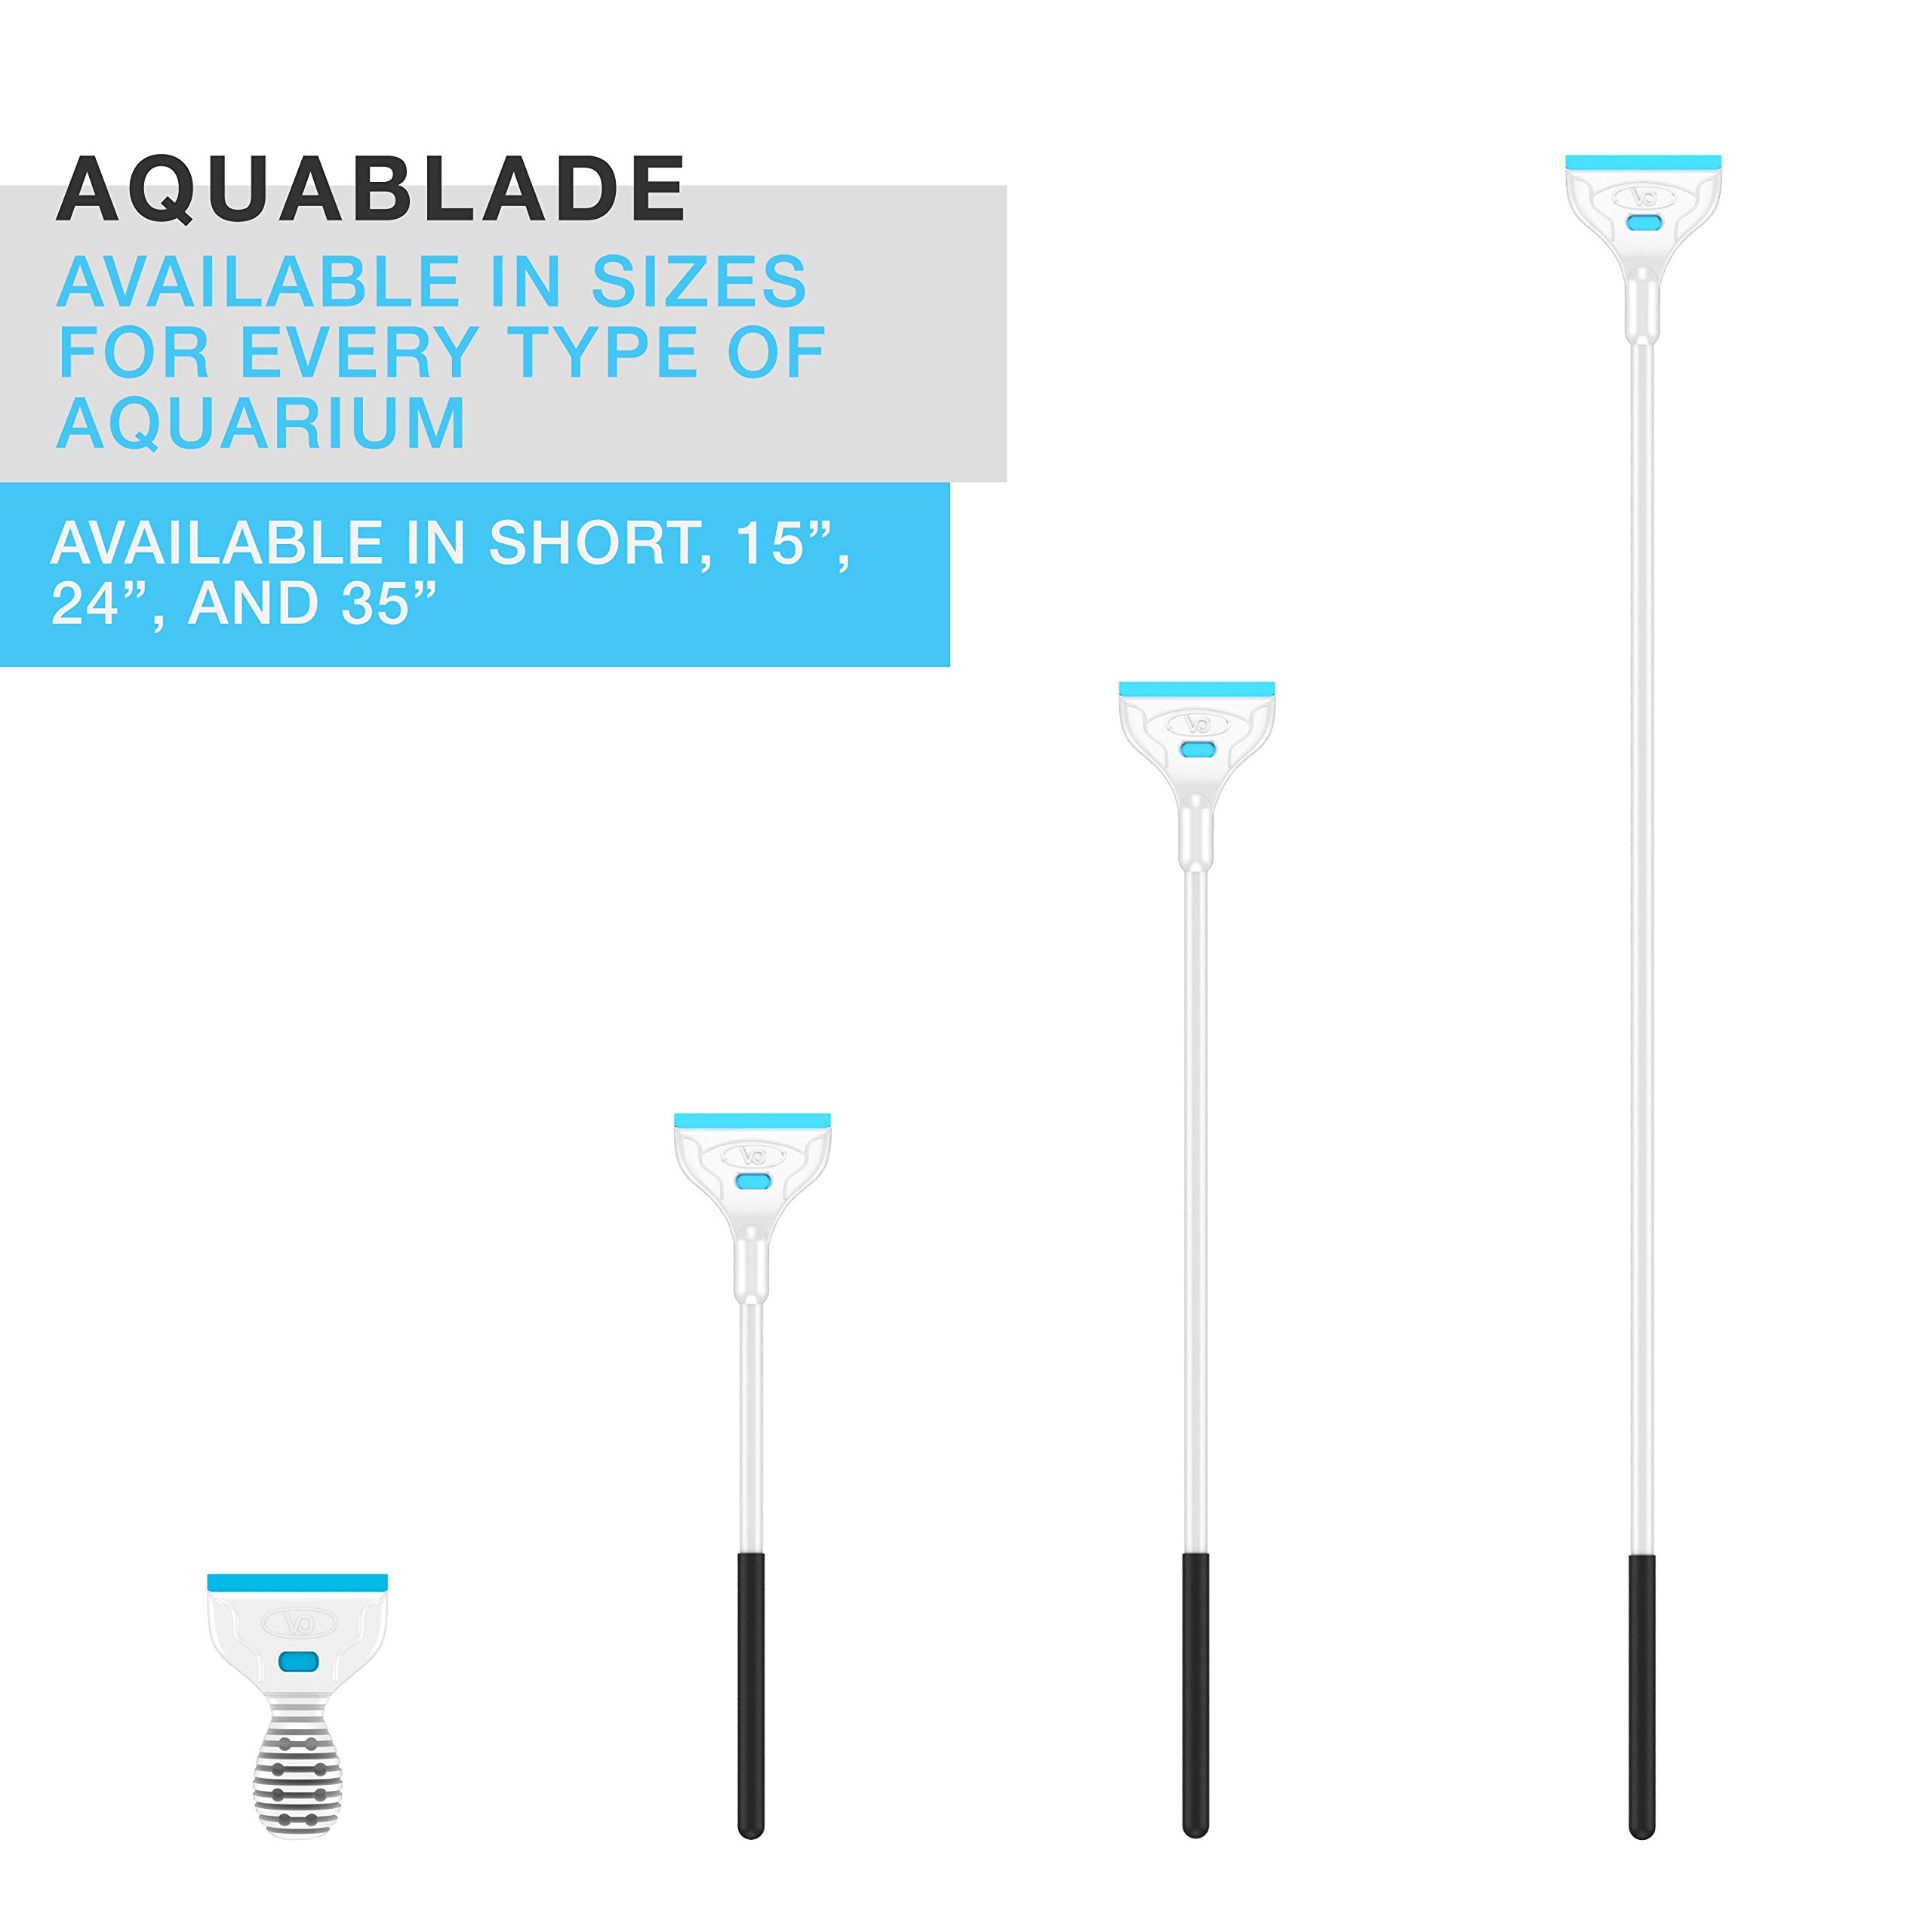 Continuum Aquatics AquaBlade P - Acrylic Safe Aquarium Scraper w/ Plastic Blade, Long, White